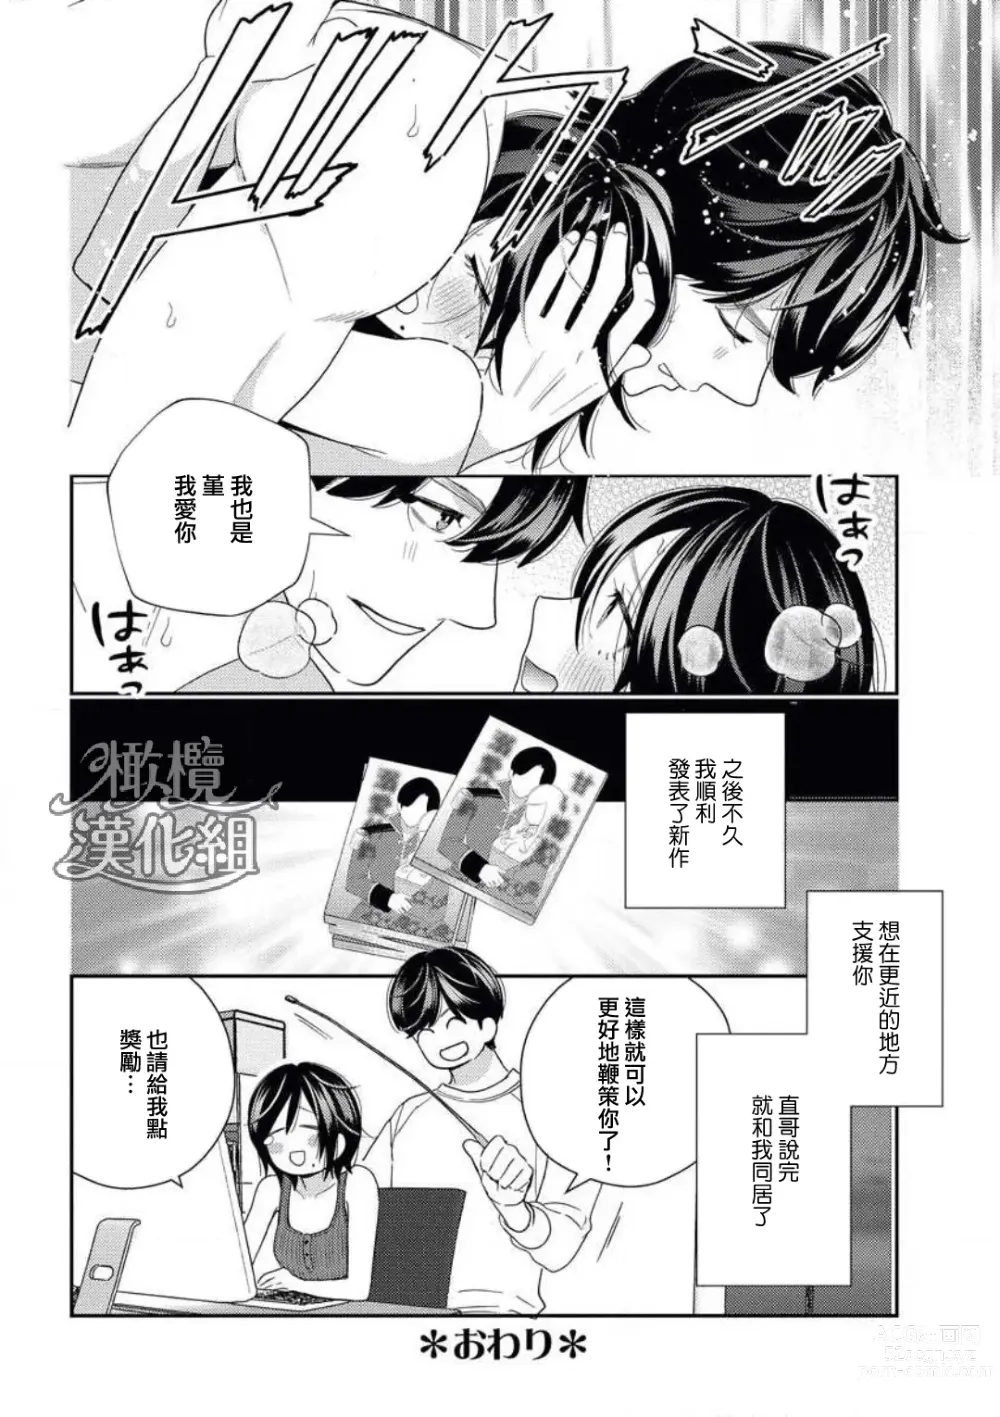 Page 56 of manga 青梅竹马难以攻陷被小黄话（※正当工作需求）玩弄一番